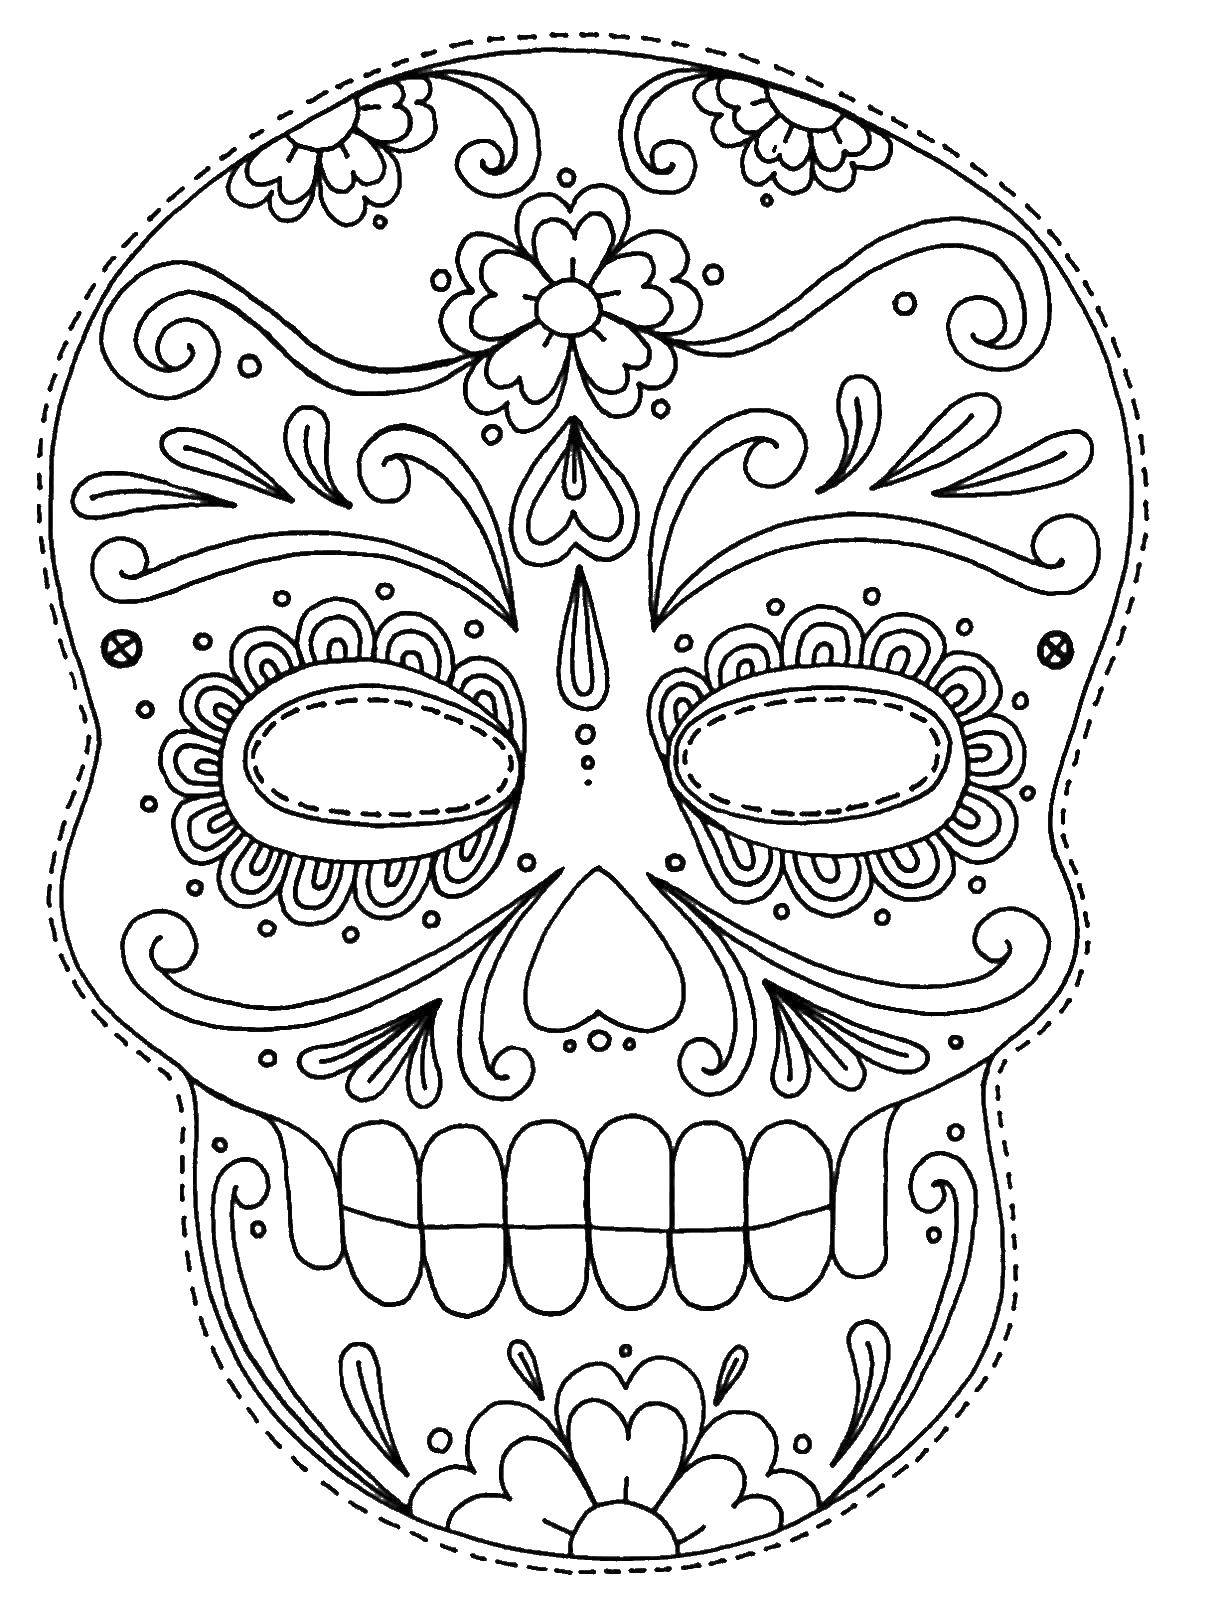 Название: Раскраска Красивый череп. Категория: Череп. Теги: череп, узоры, цветы.